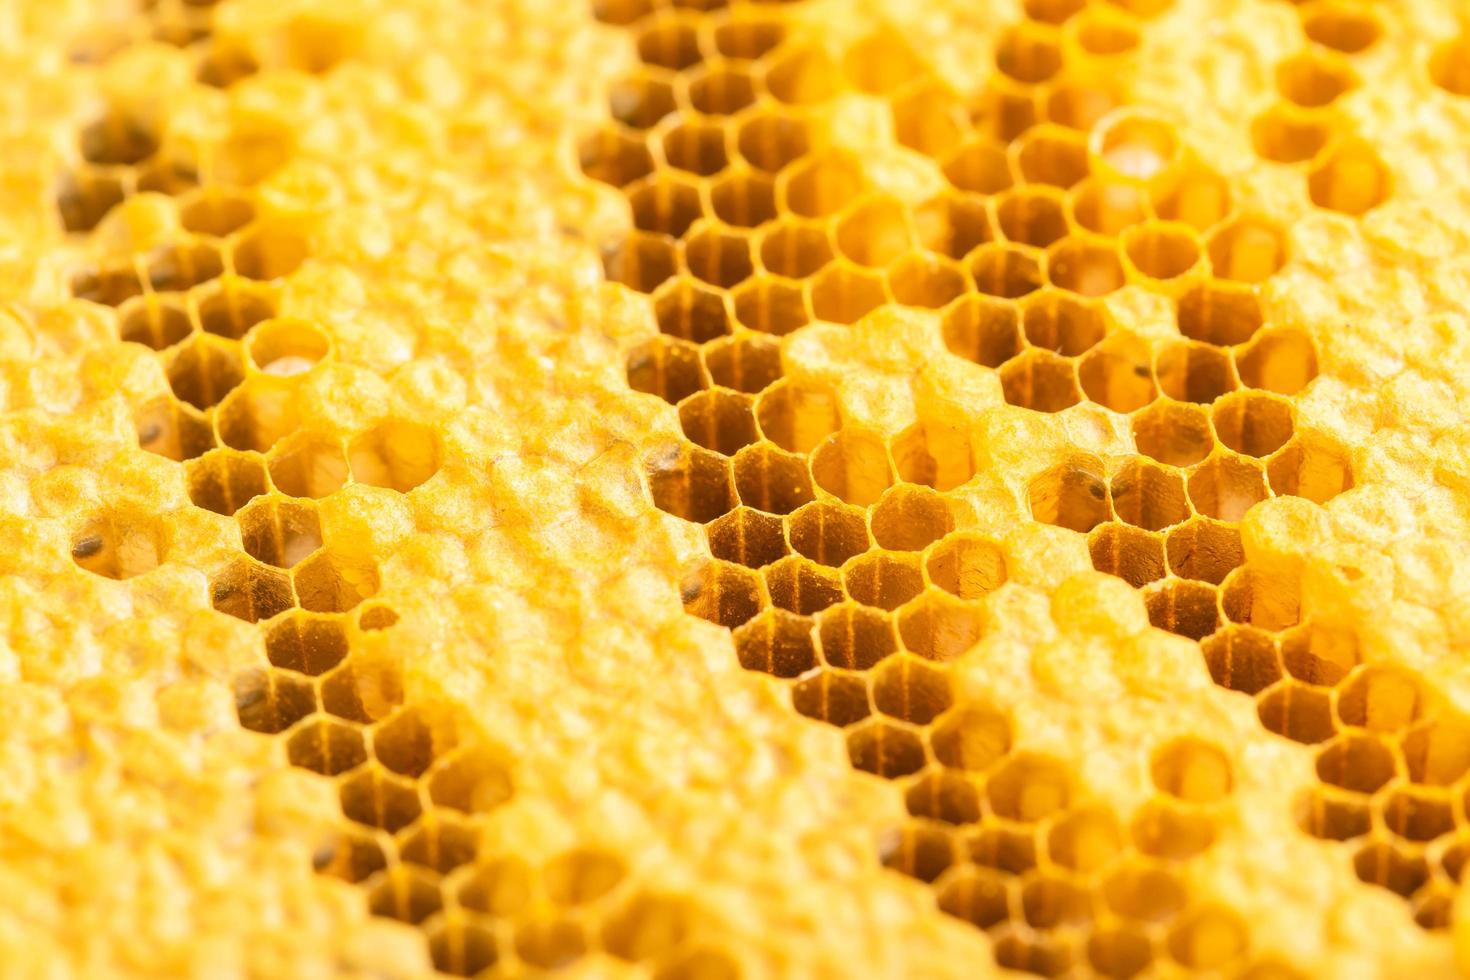 grupp av bin på honeycomb studio skjuta. mat eller natur koncept foto